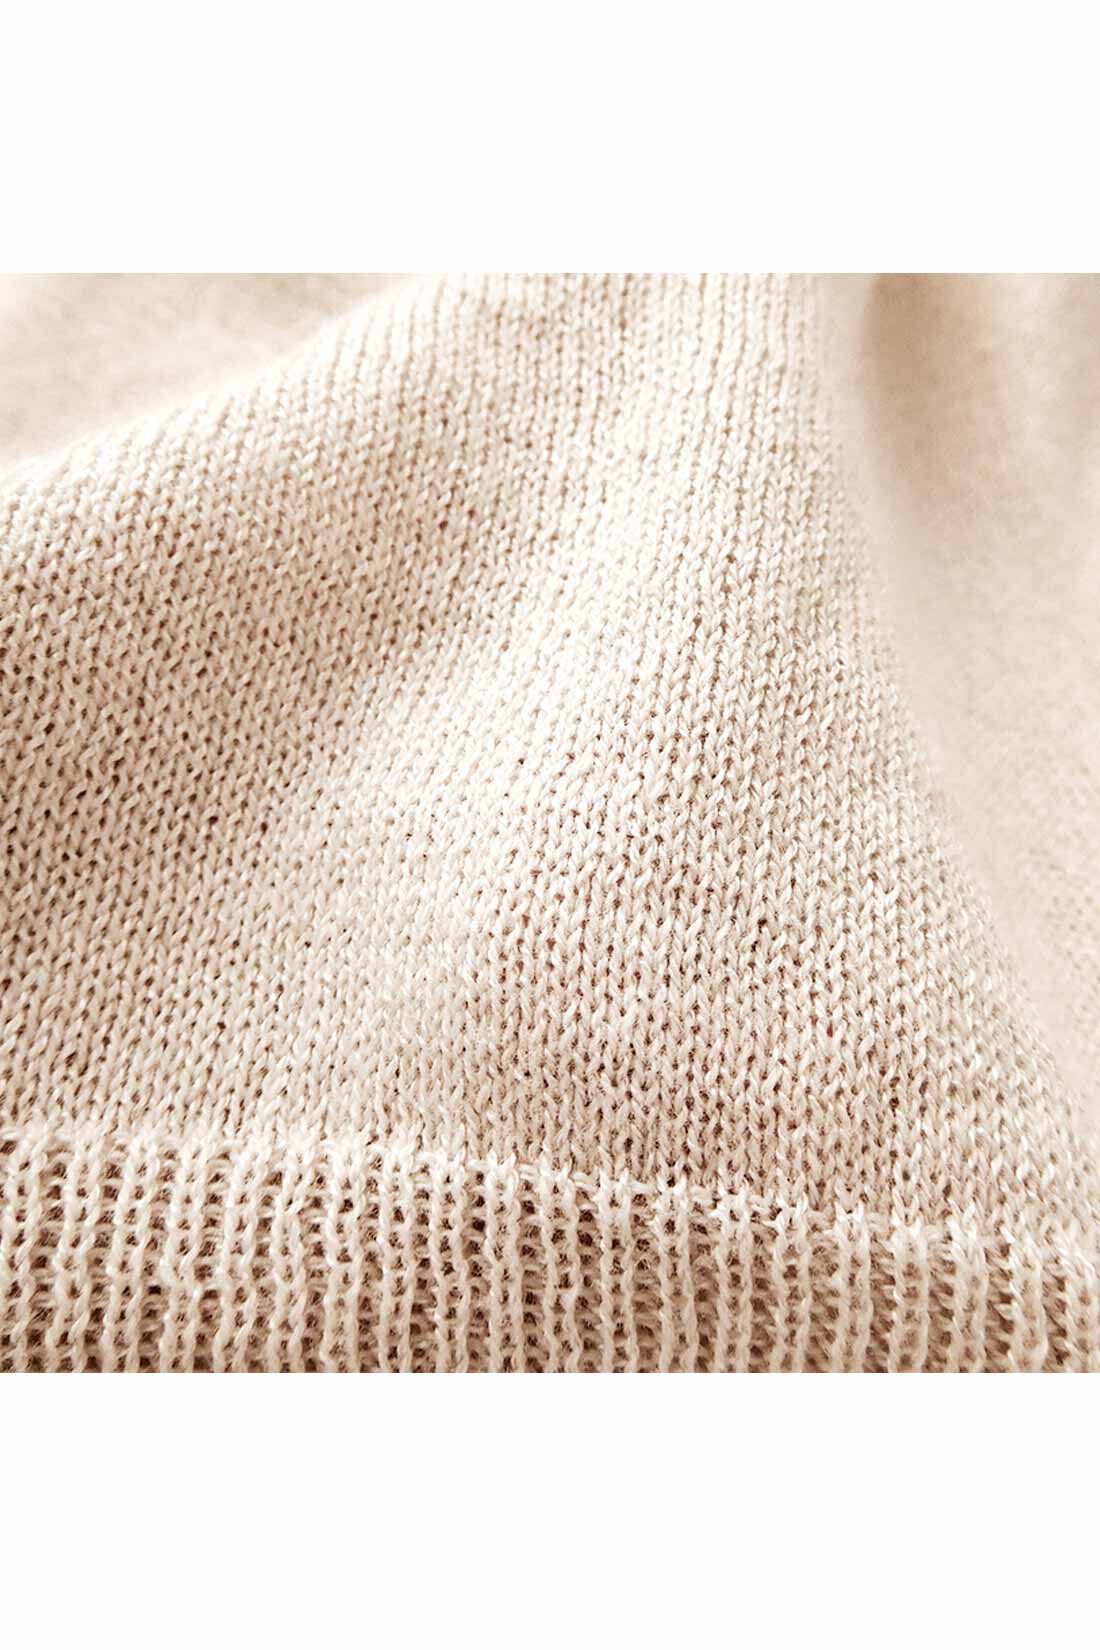 シロップ．|薄くてやわらか 綿レーヨンシルクのニットトップスの会|軽く編み上げたので、透け感があります。